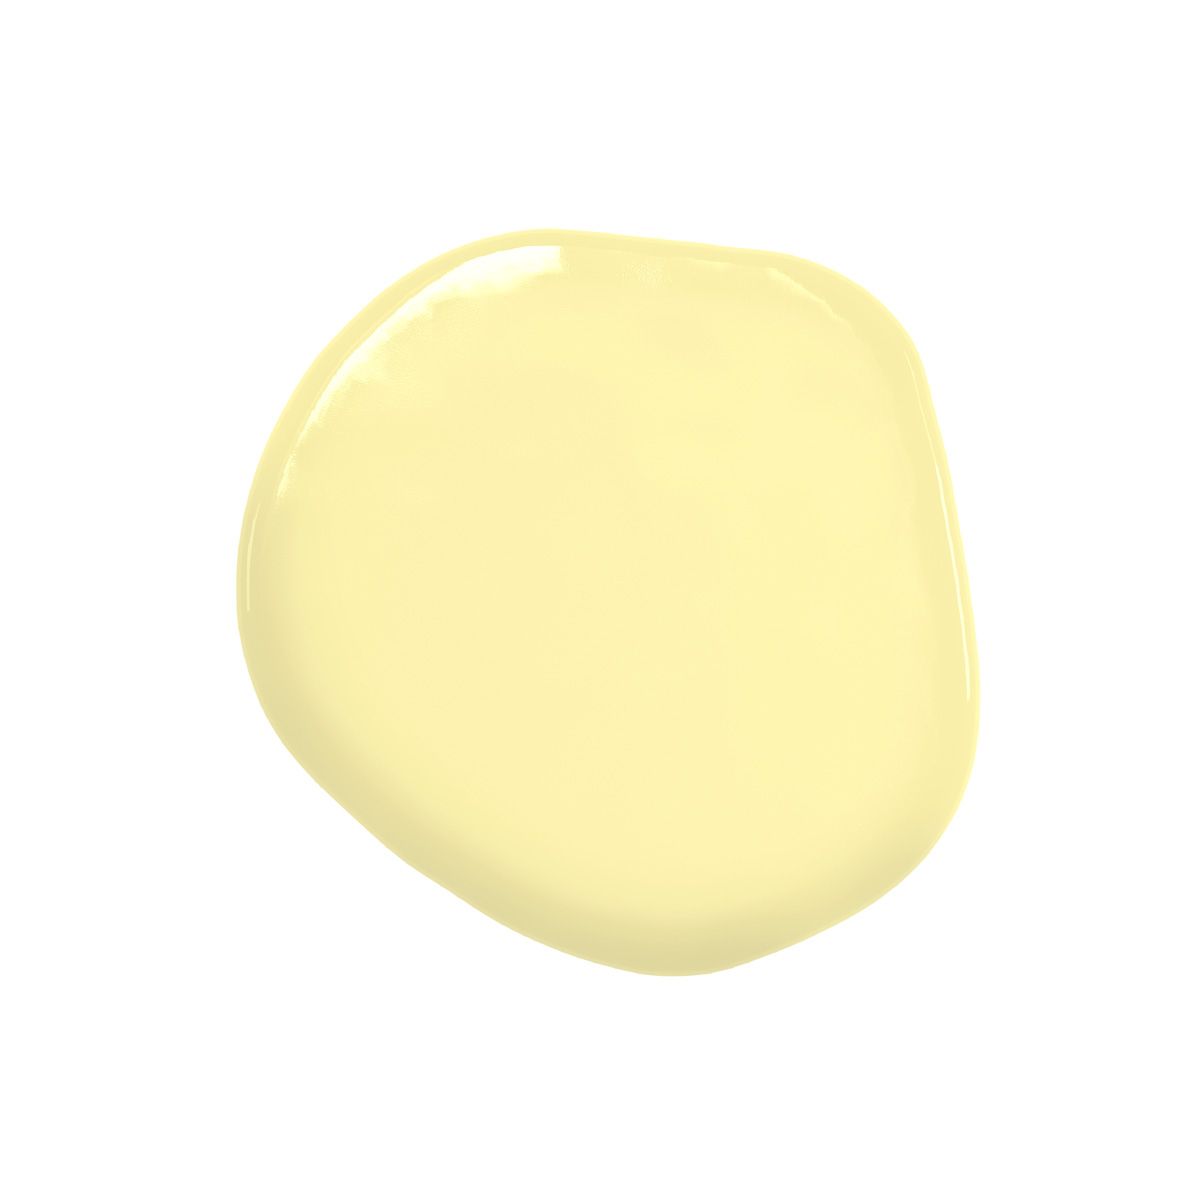 Colour Mill - ölbasierte Lebensmittelfarbe - Lemon - Gelb